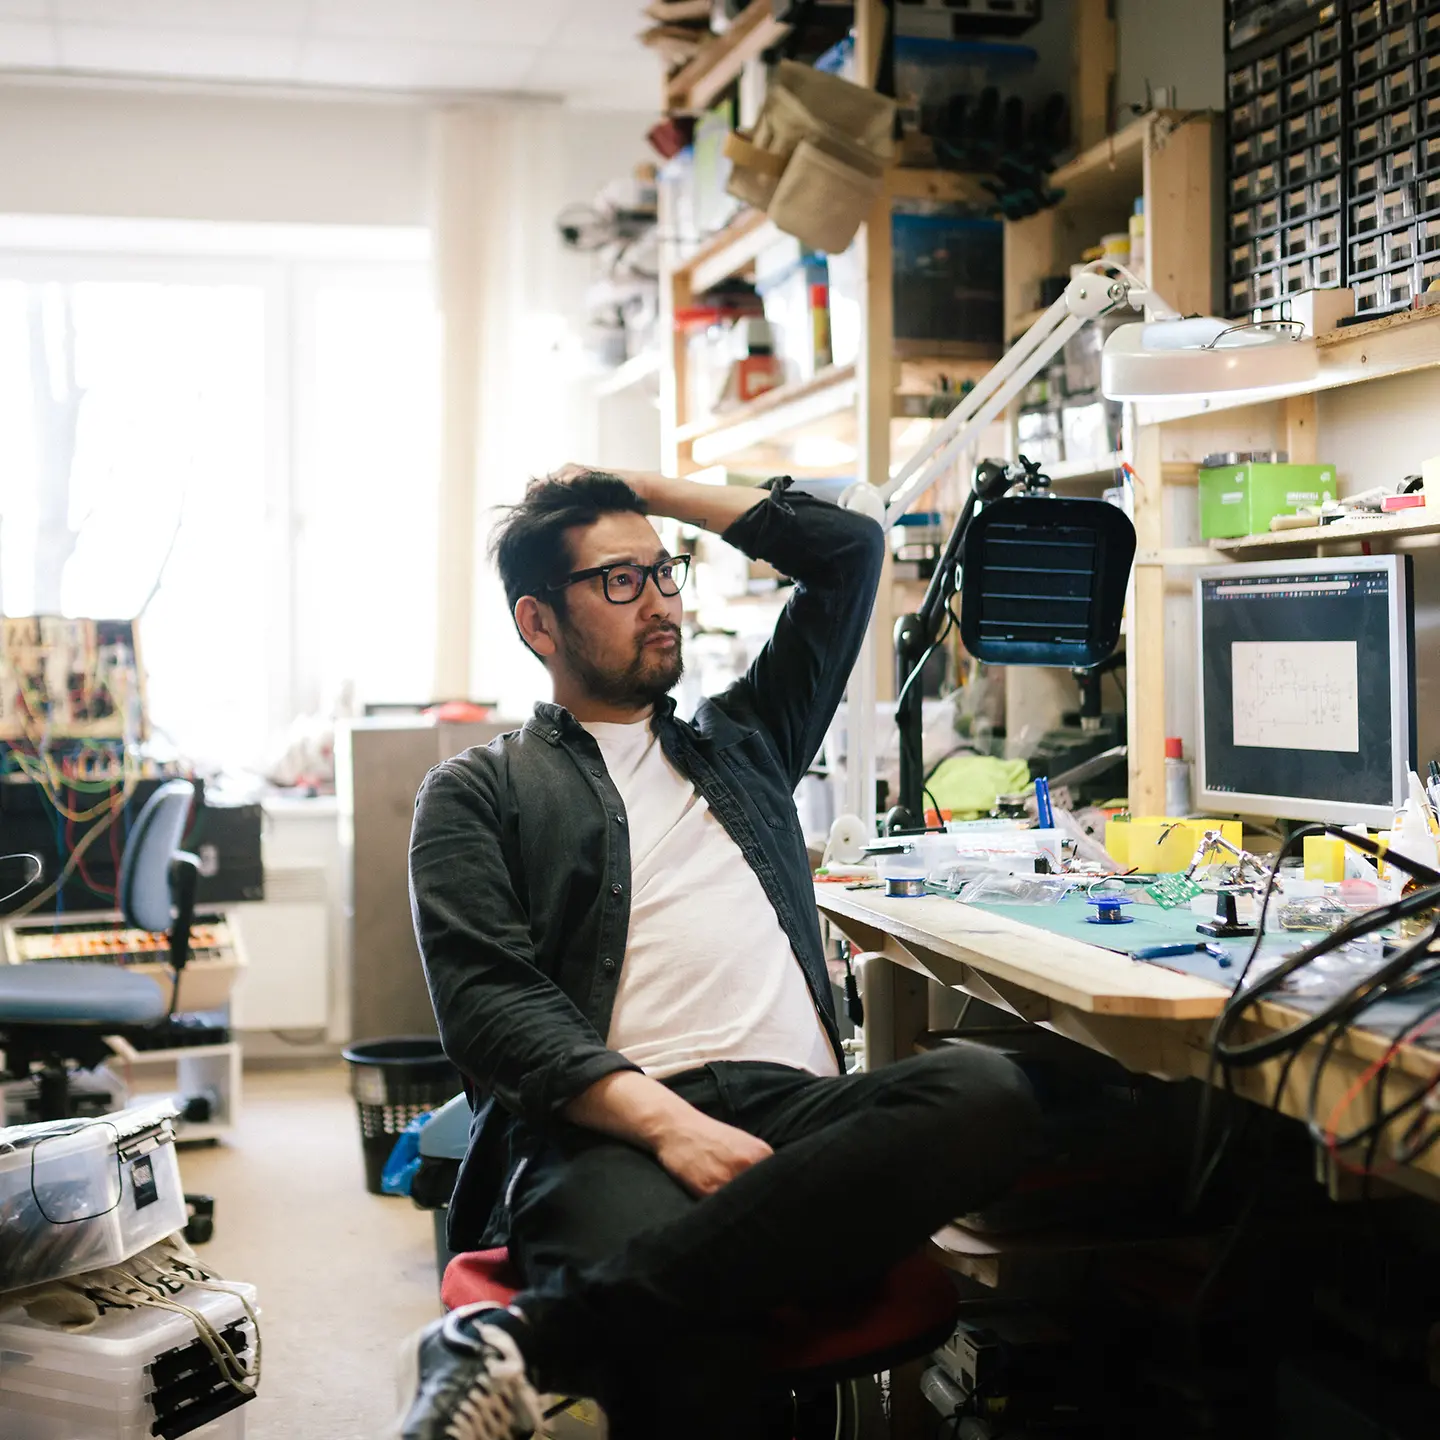 Ein junger Mann sitzt in einem Büro mit viel Technik-Equipment